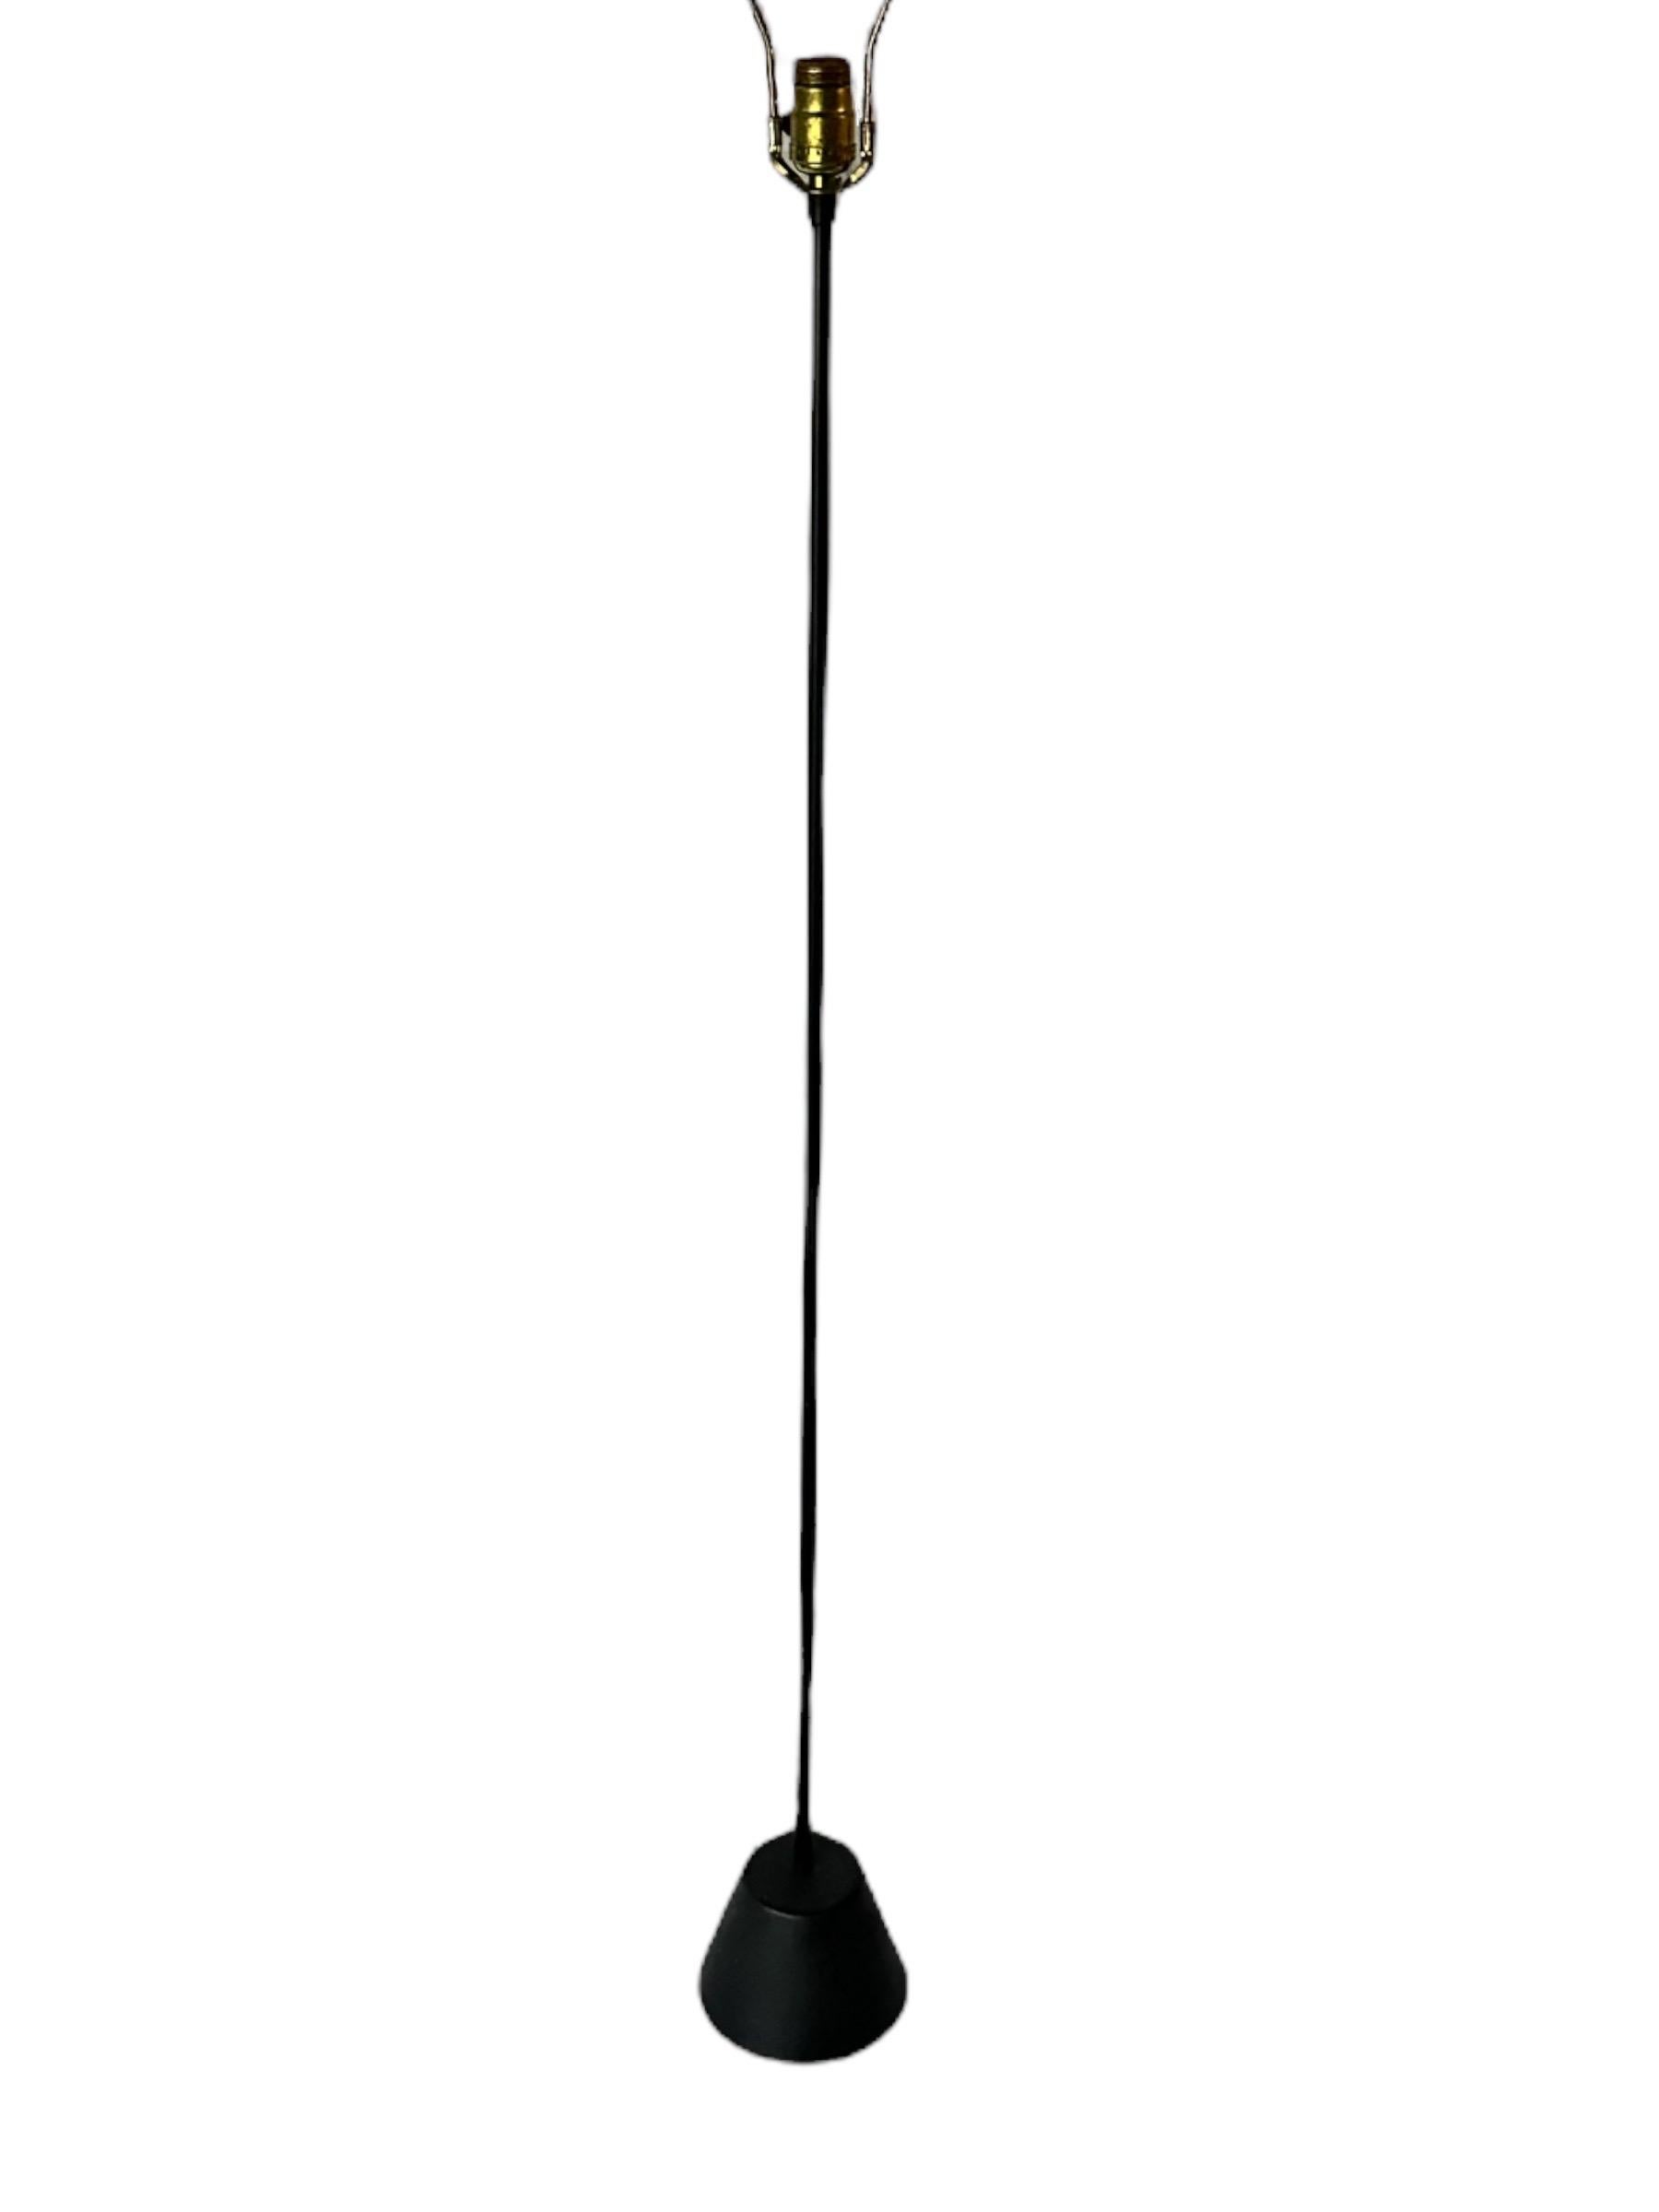 Elegant lampadaire minimaliste noir. Mât métallique fin ancré par une base conique lourde et chic. Abat-jour disponible pour 99 $ supplémentaires. Nous disposons également d'un deuxième exemplaire en jaune. 